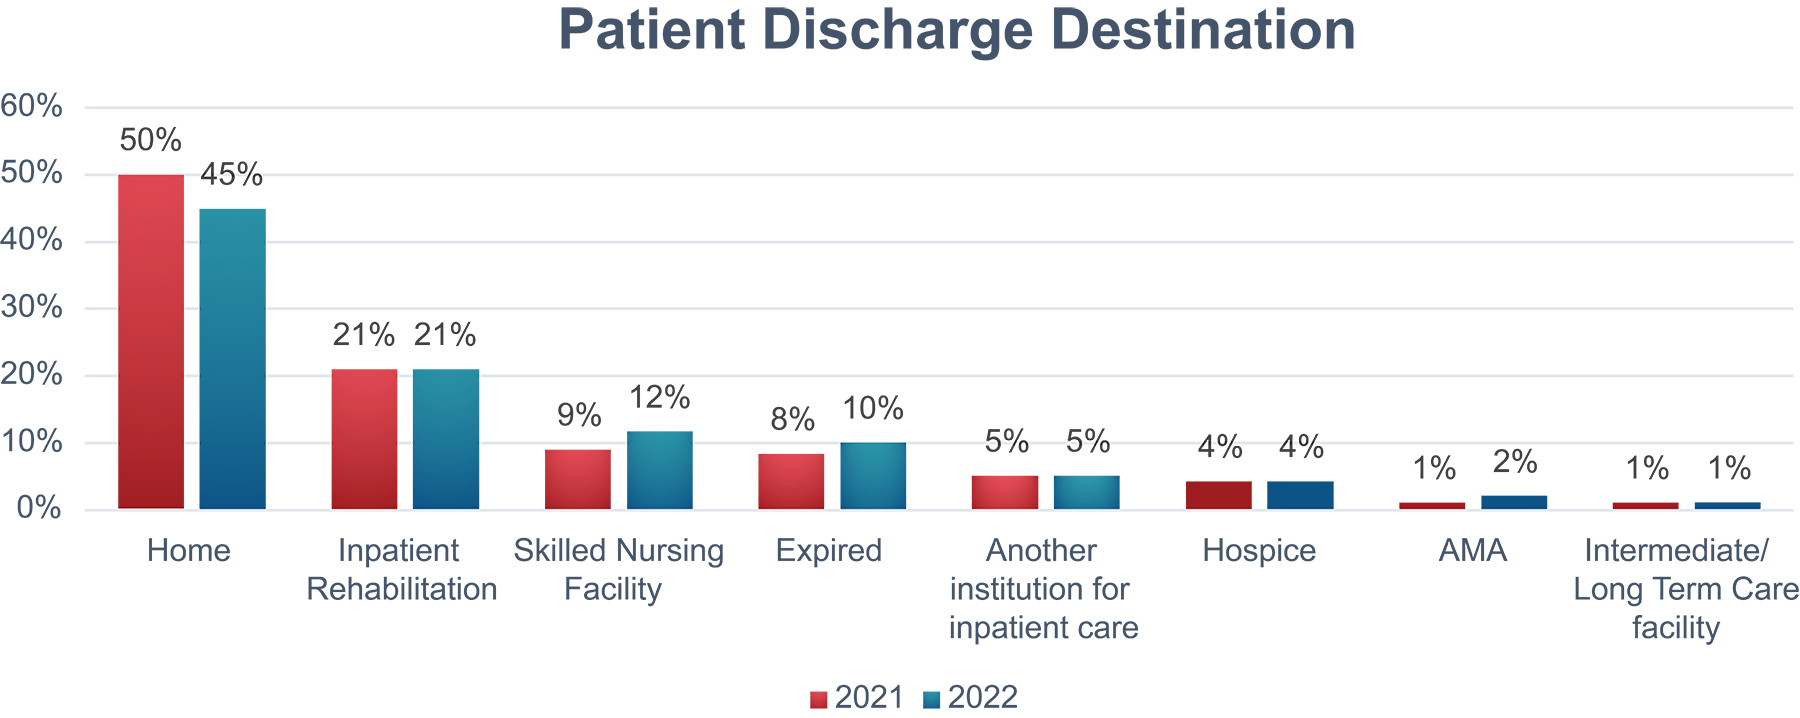 Patient Discharge Distribution